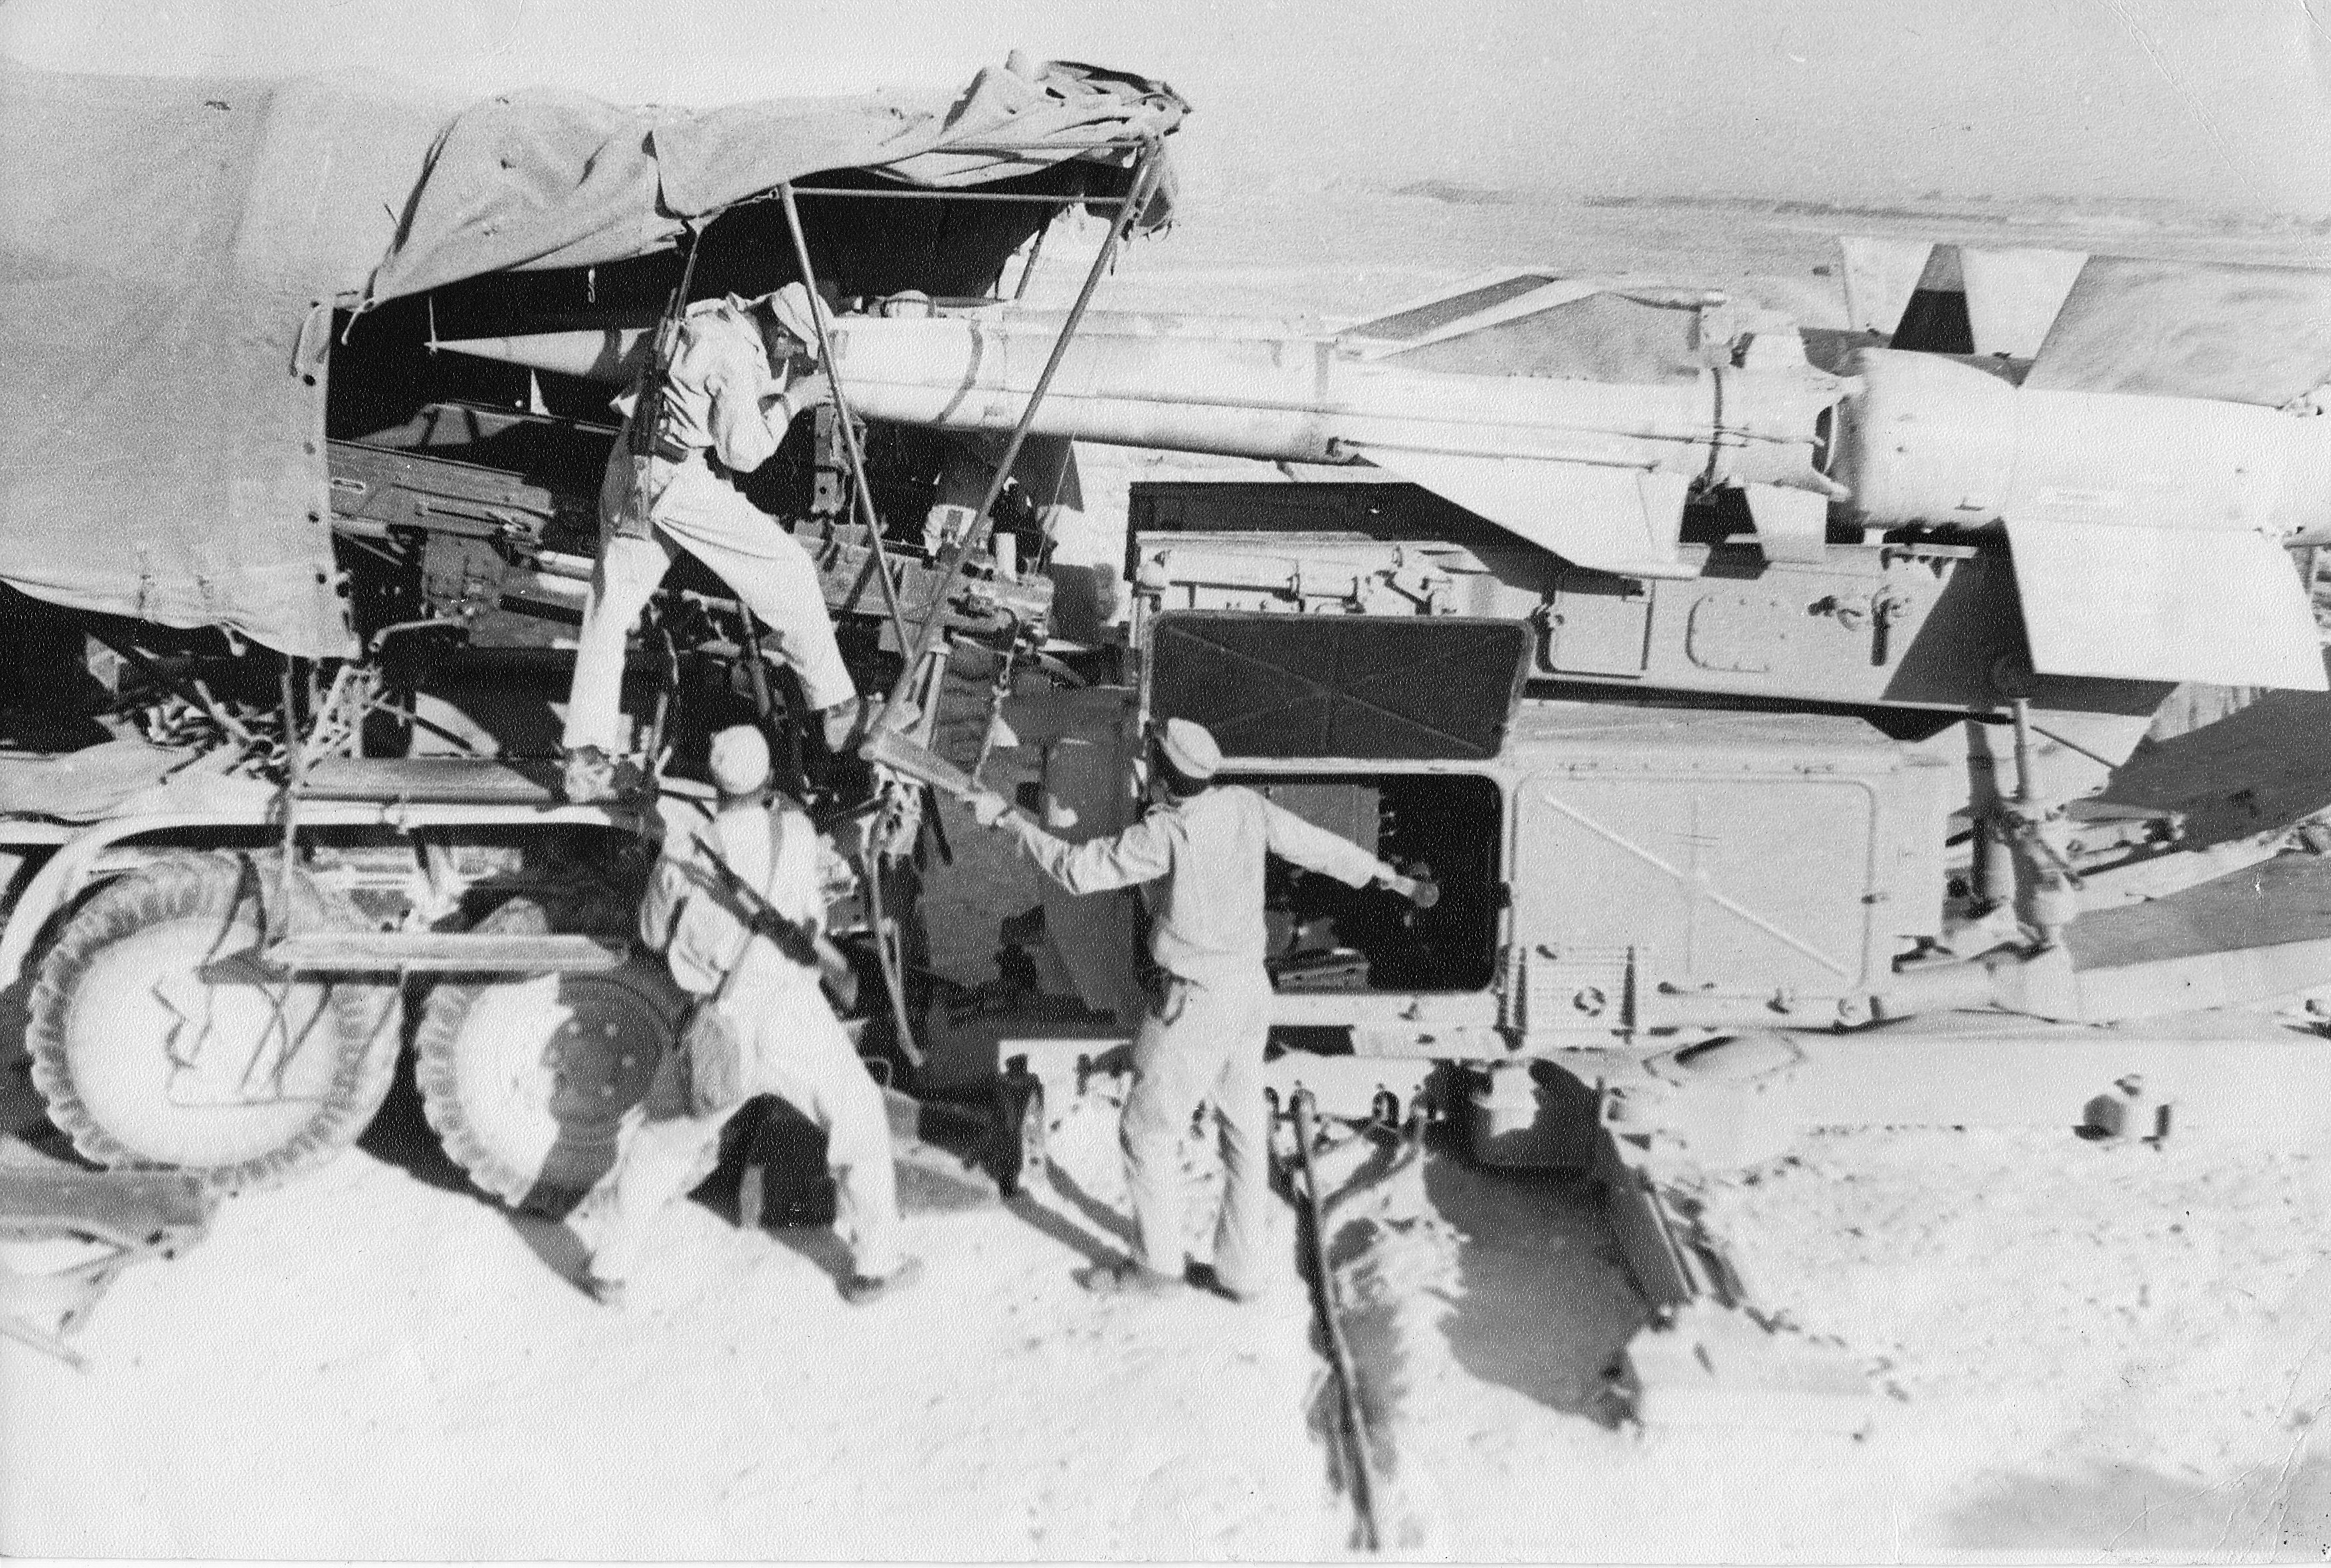 советские войска в египте